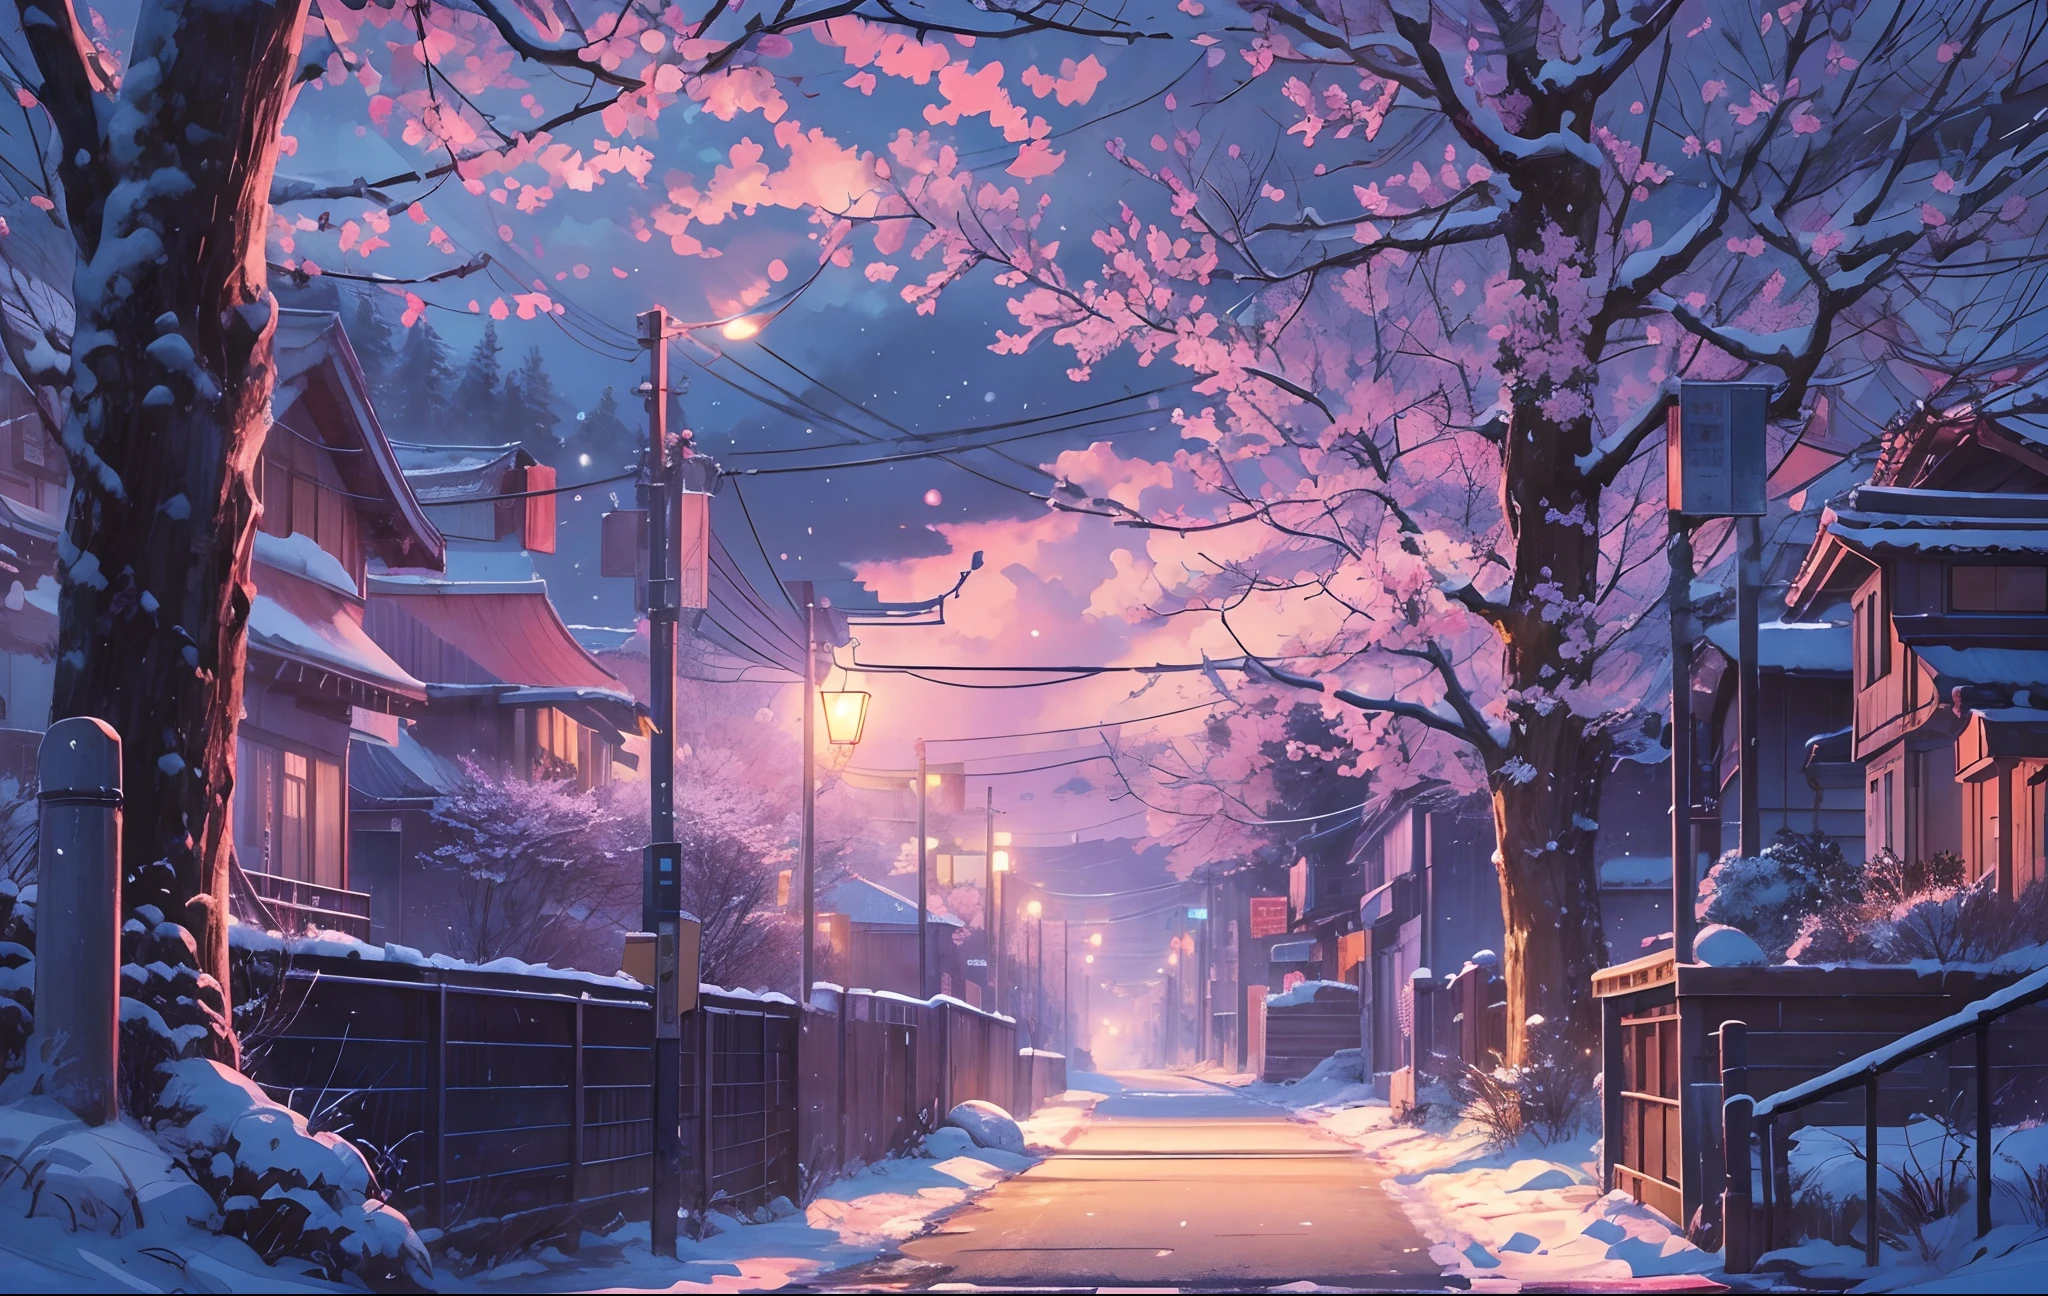 걸작, 컨셉 아트, 와이드 샷, 파노라마, 거리에 다리가 있는 밤의 거리, (겨울), 눈 내리는, 상세한 매트 페인팅, By Makoto Shinkai, 와이드스크린 샷, 차도, 벚꽃나무가 늘어선 길, 미야자키의 애니메이션 영화, 끝없는 밤, 거리의 벚꽃나무, 컬러로 보는 영화 예술, 상세한 디지털 애니메이션 아트, (서사적 구성, 서사시적인 비율), HD